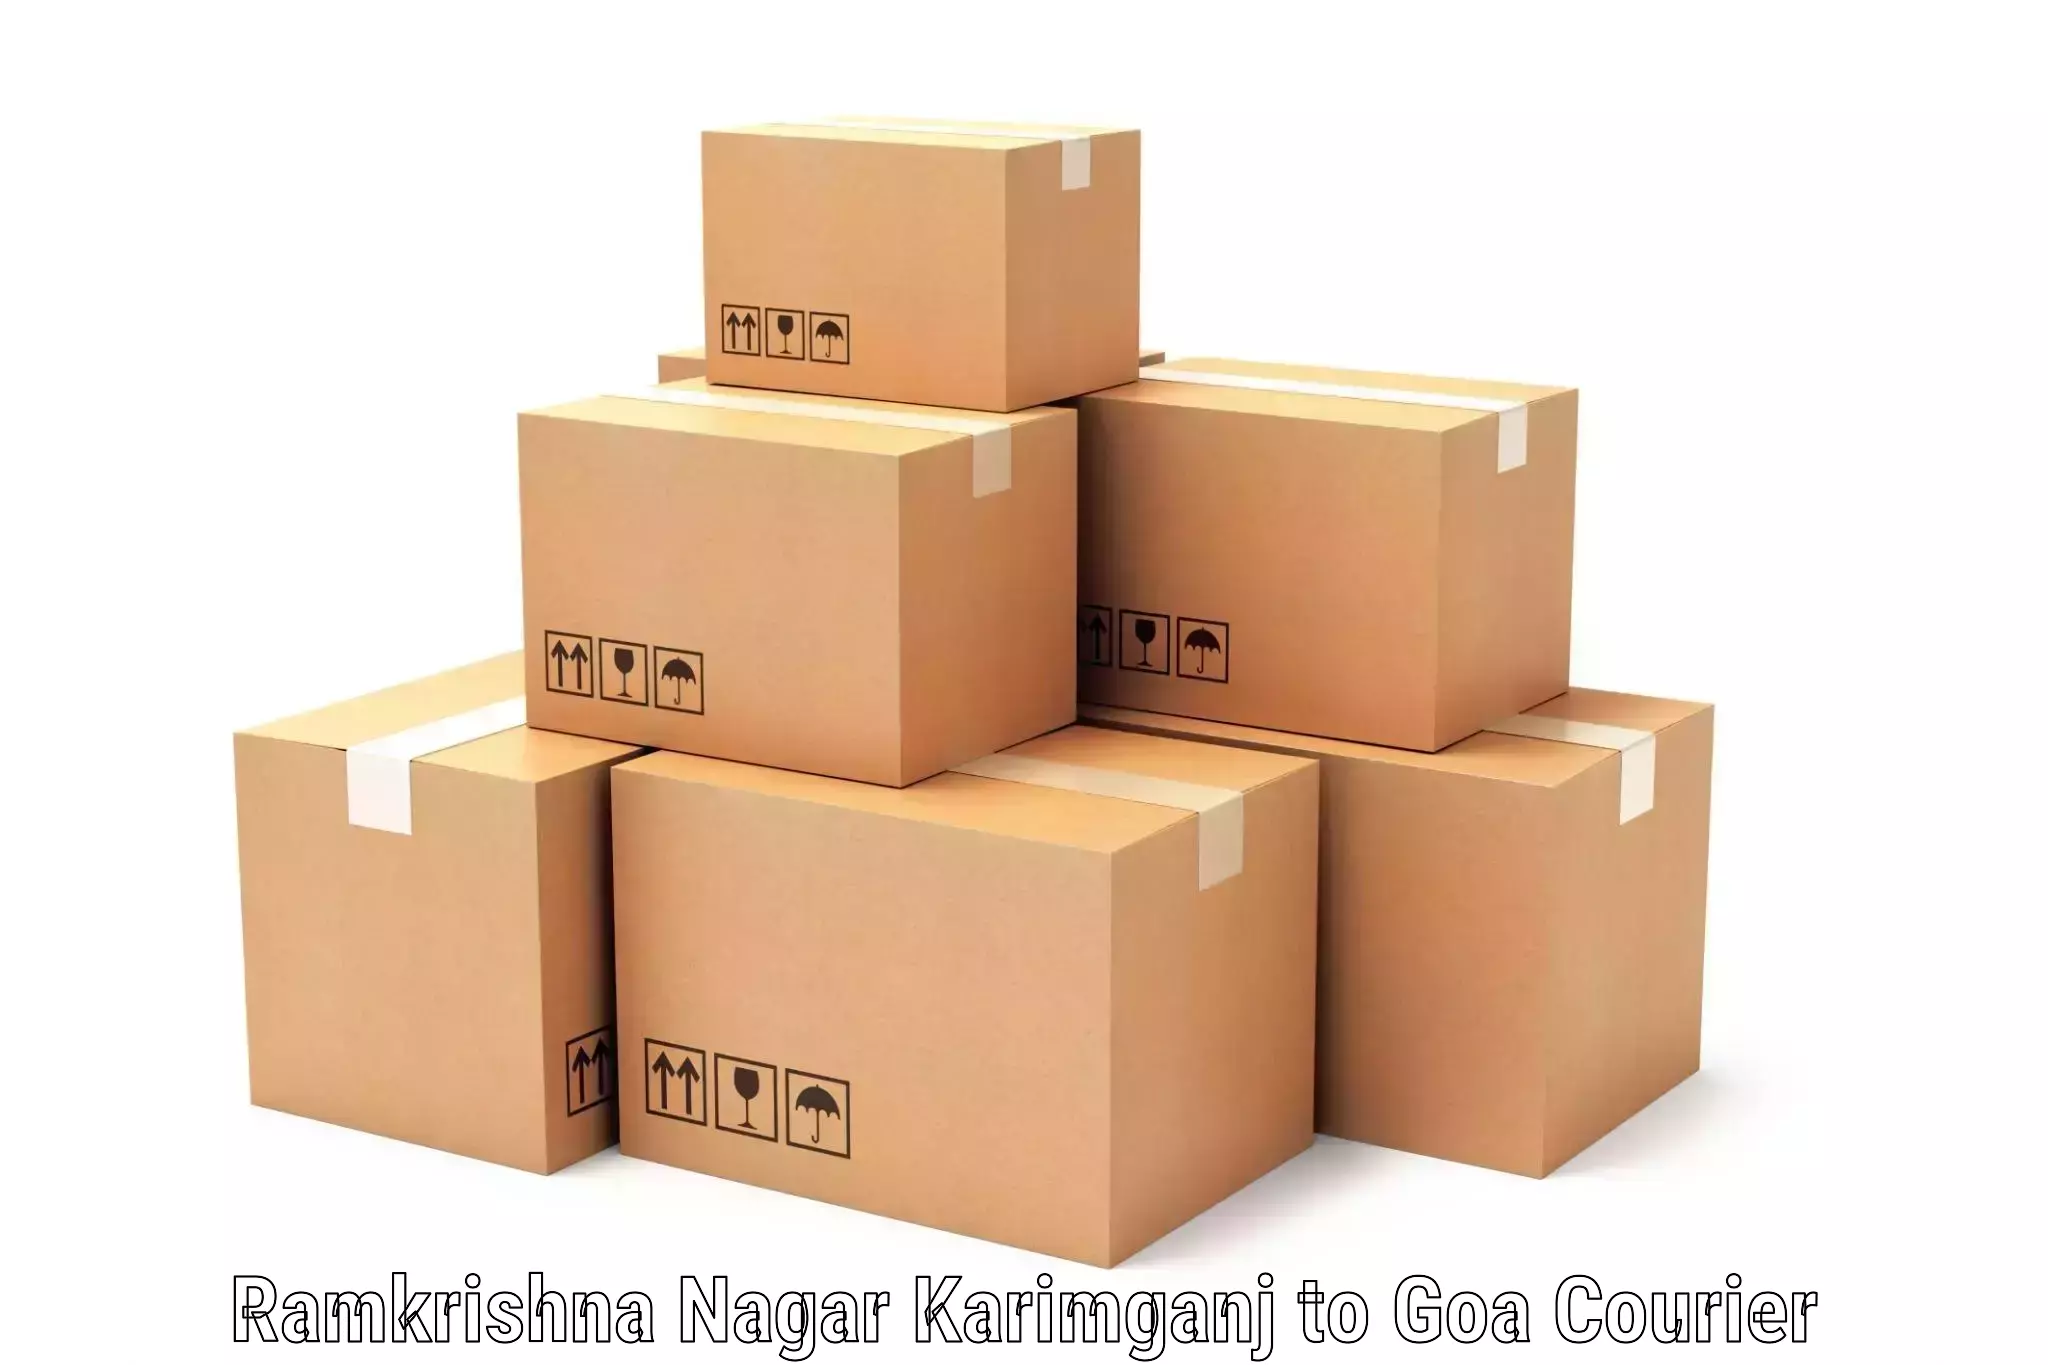 Courier service efficiency Ramkrishna Nagar Karimganj to Vasco da Gama